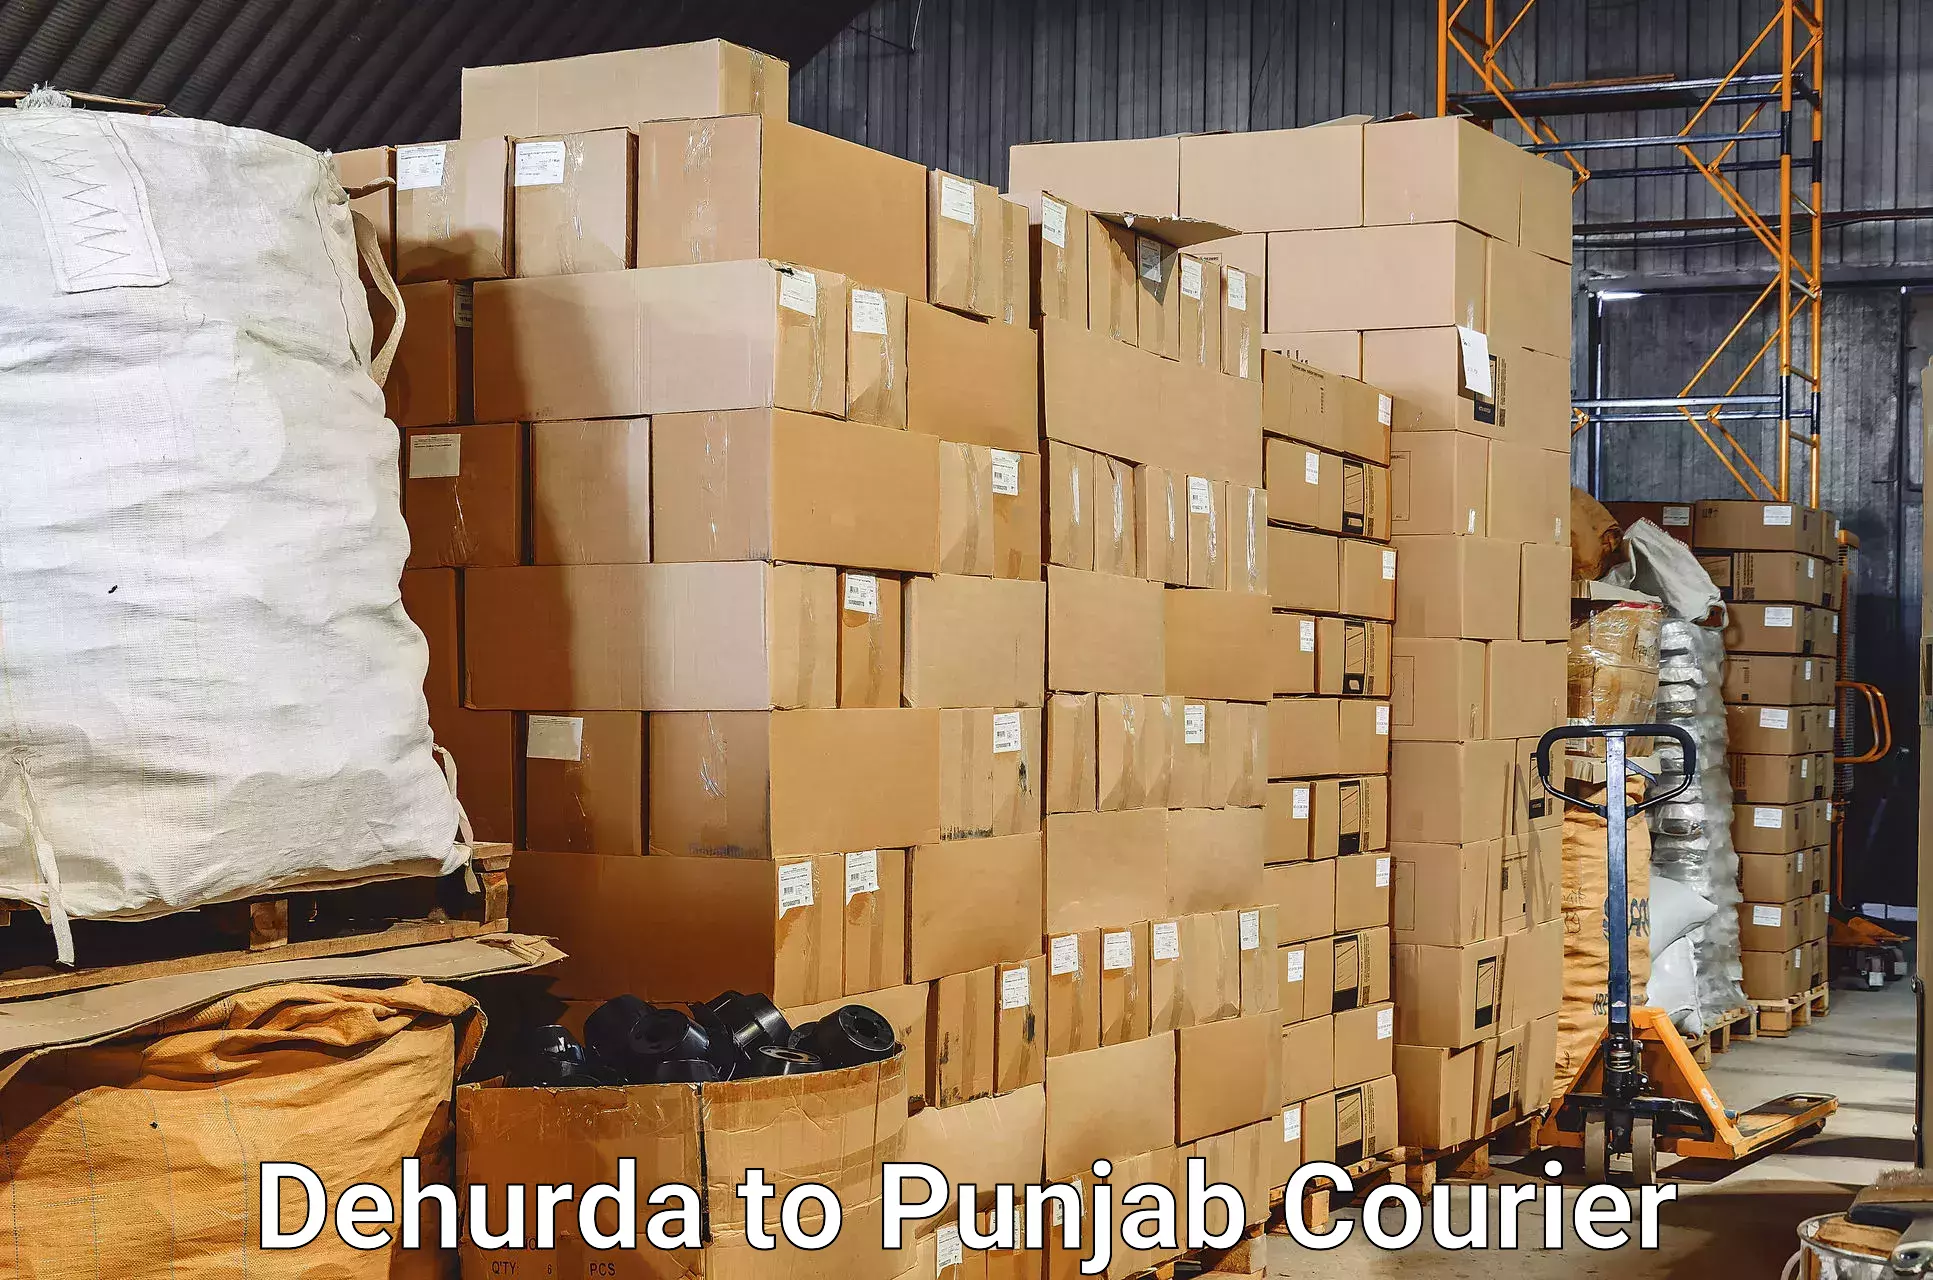 Quick luggage shipment in Dehurda to Fatehgarh Sahib